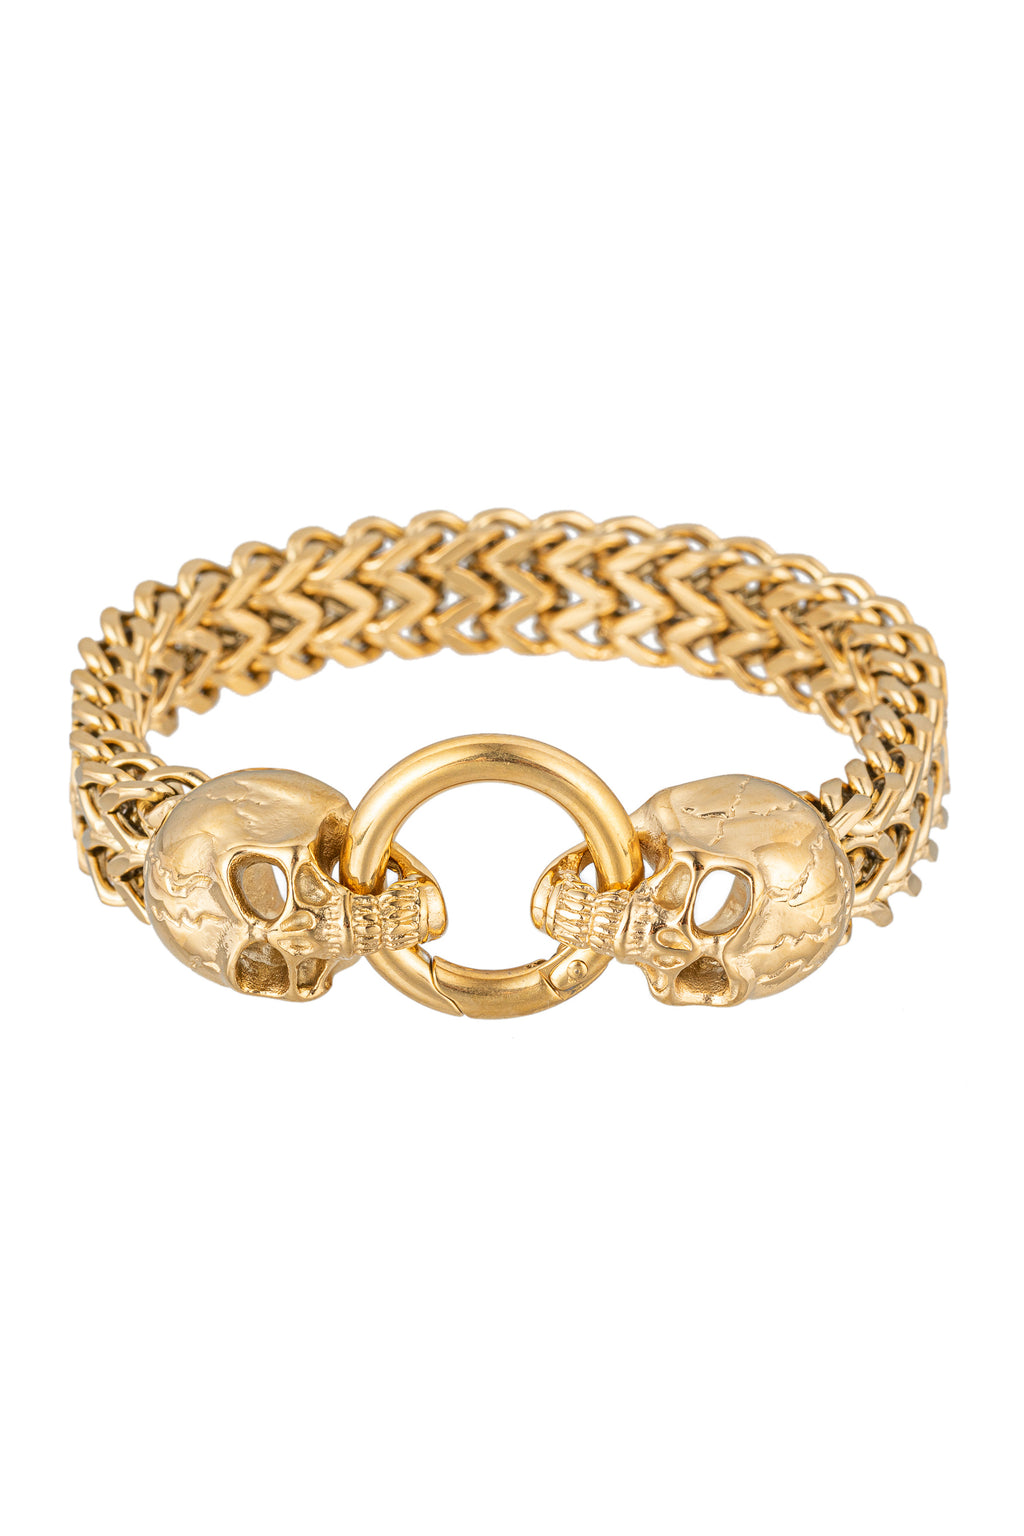 Gold tone titanium skull head pendant bracelet.